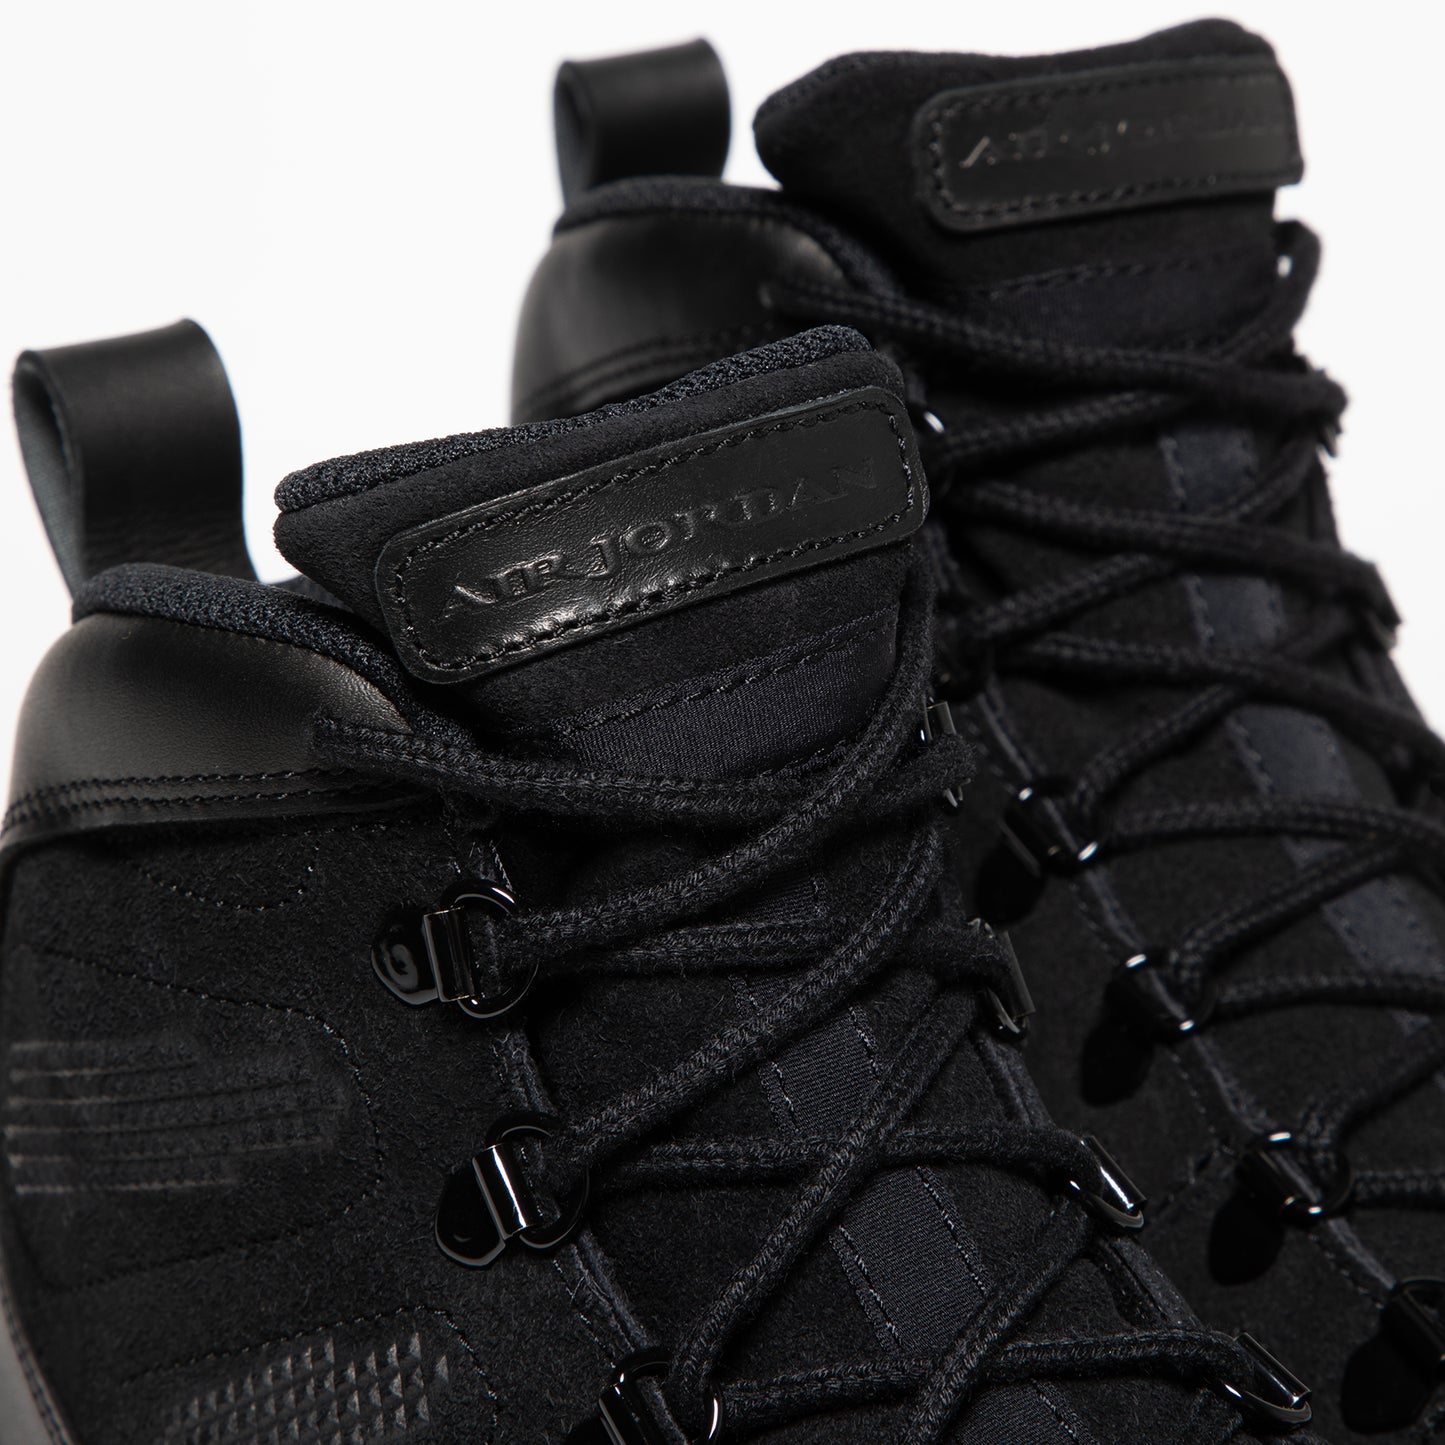 Nike Air Jordan 9 Retro (Black/Gum Light Brown)